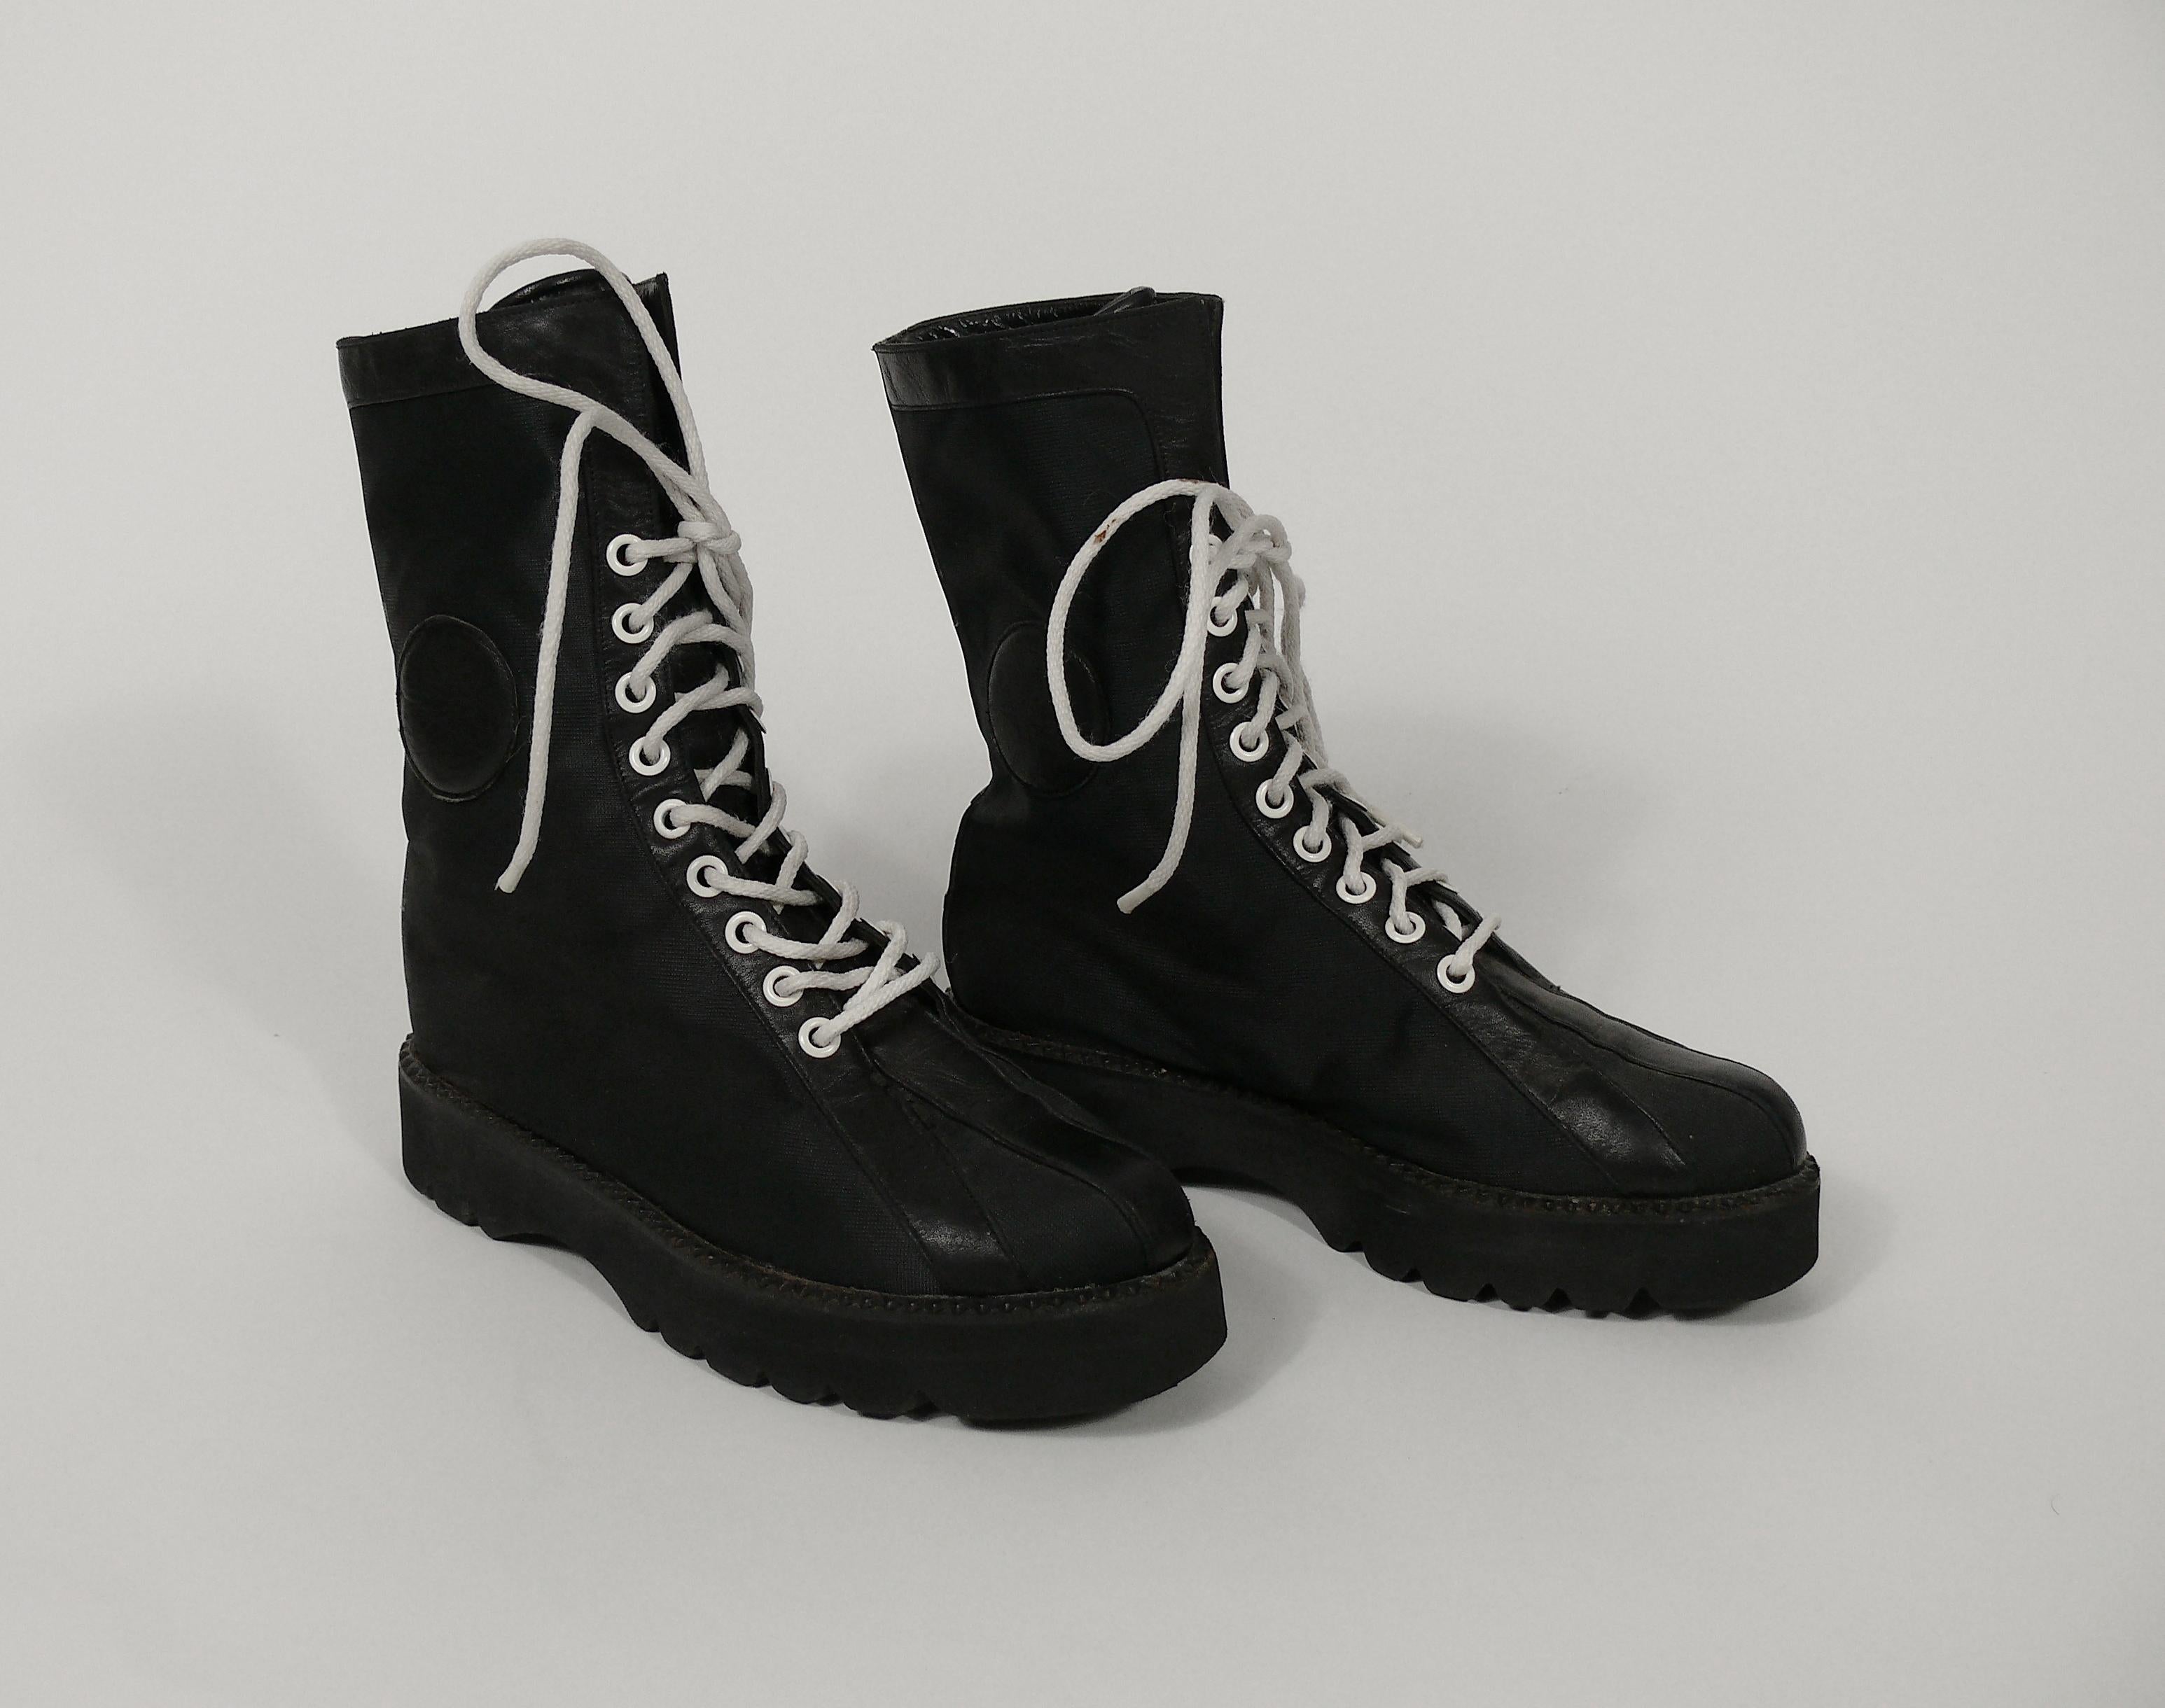 vintage black lace up boots